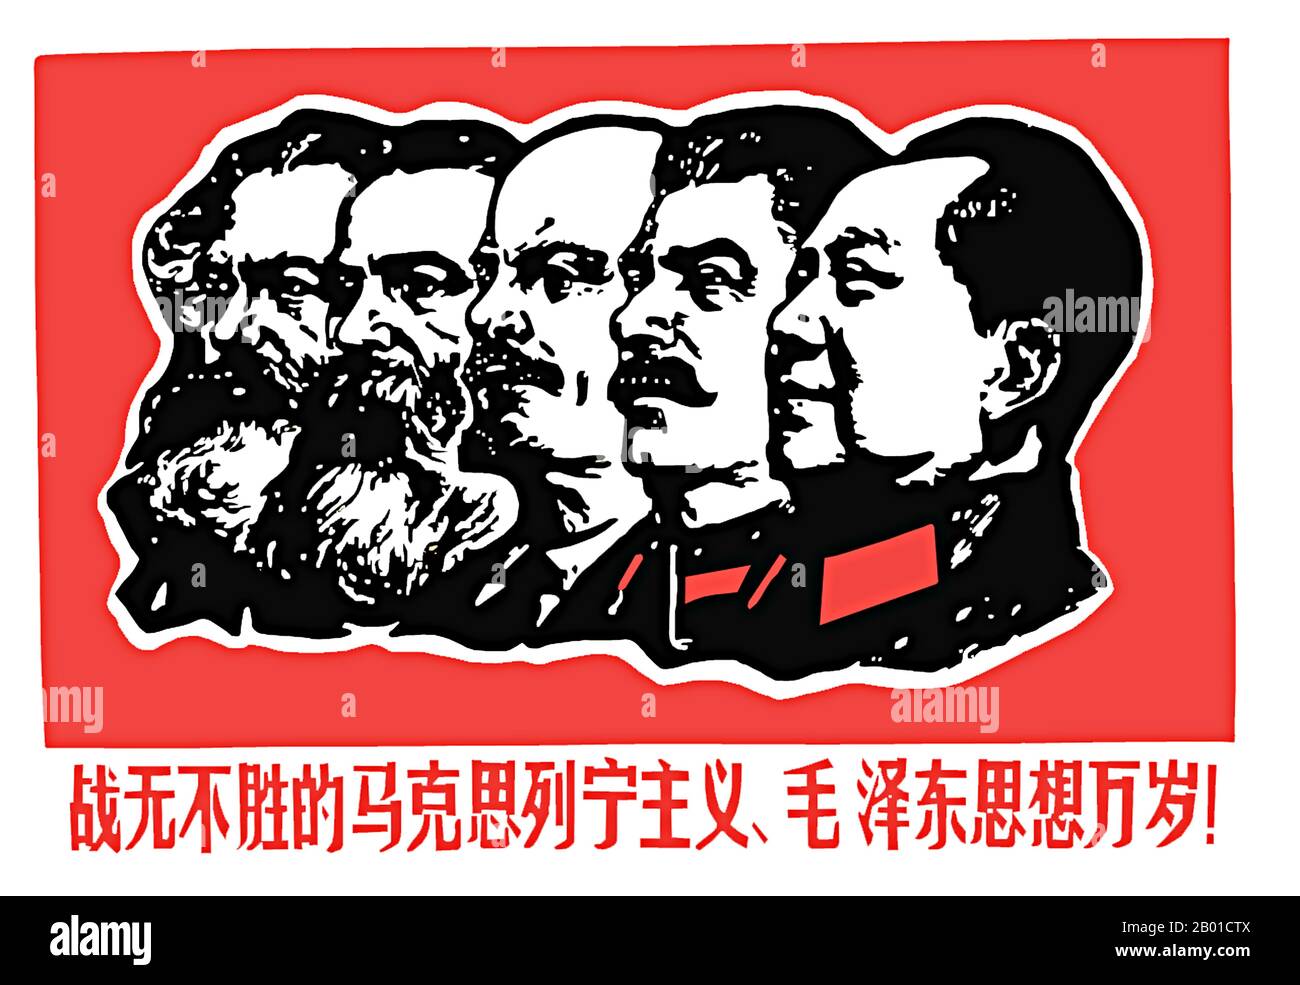 China: Revolutionäres Plakat 'Es lebe der unbesiegbare Marxismus, Leninismus und Mao Zedong-Gedanke!', 1967. Ein revolutionäres Plakat aus dem kommunistischen China kurz vor Beginn der Kulturrevolution (1966-1976) mit (von links nach rechts): Karl Marx, Friedrich Engels, Vladimir Iljitsch Lenin, Joseph Stalin und Mao Zedong. "Mao-Zedong-Gedanken", allgemein abgekürzt zu "Maoismus", spielten eine zentrale Rolle in der Politik der "Großen proletarischen Kulturrevolution" und spiegeln sich am bekanntesten im "Kleinen Roten Buch" wider. Stockfoto